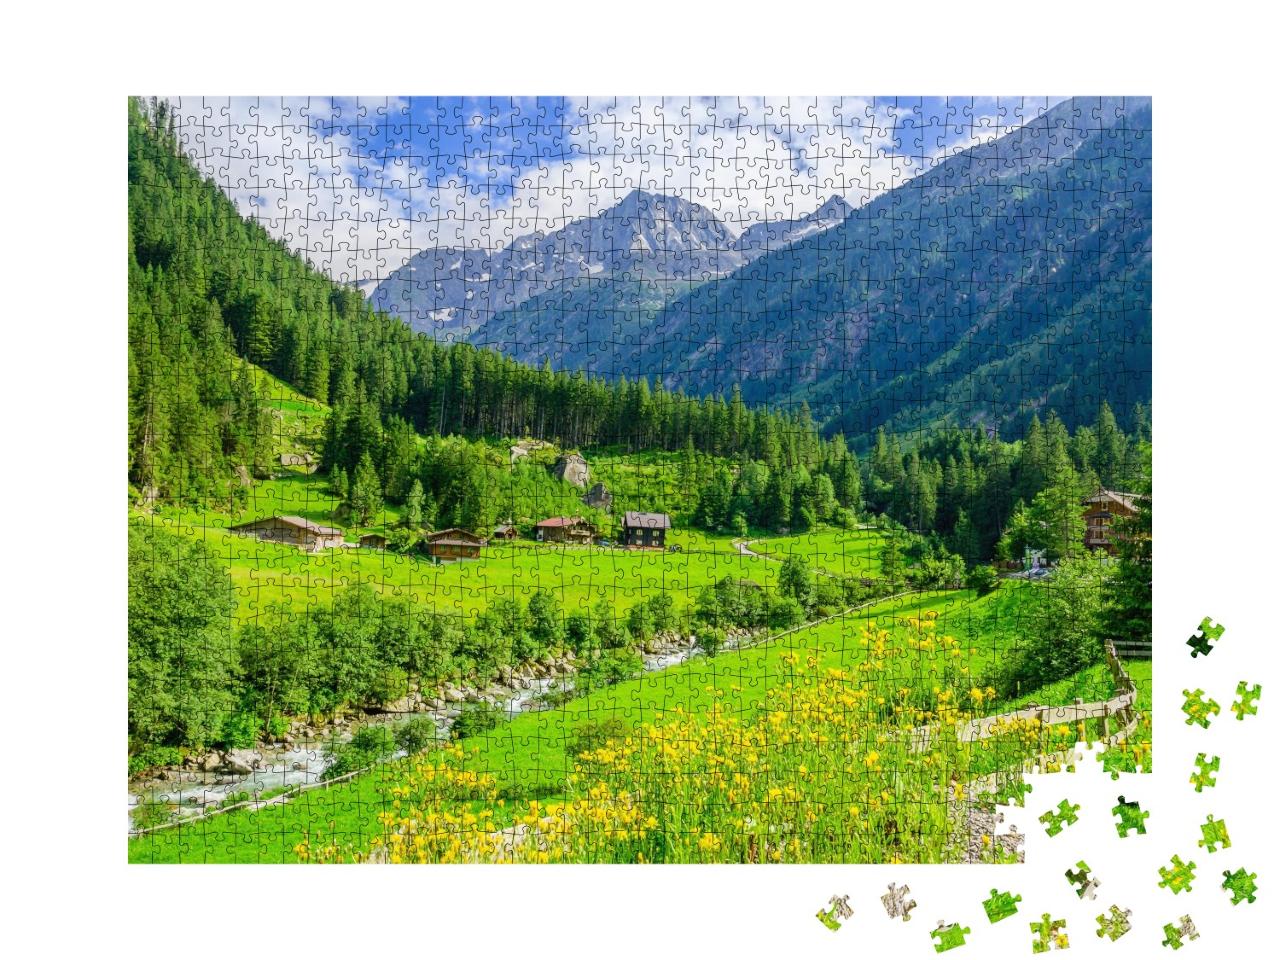 Puzzle de 1000 pièces « Vertes prairies dans les Alpes de Zillertal, Autriche »